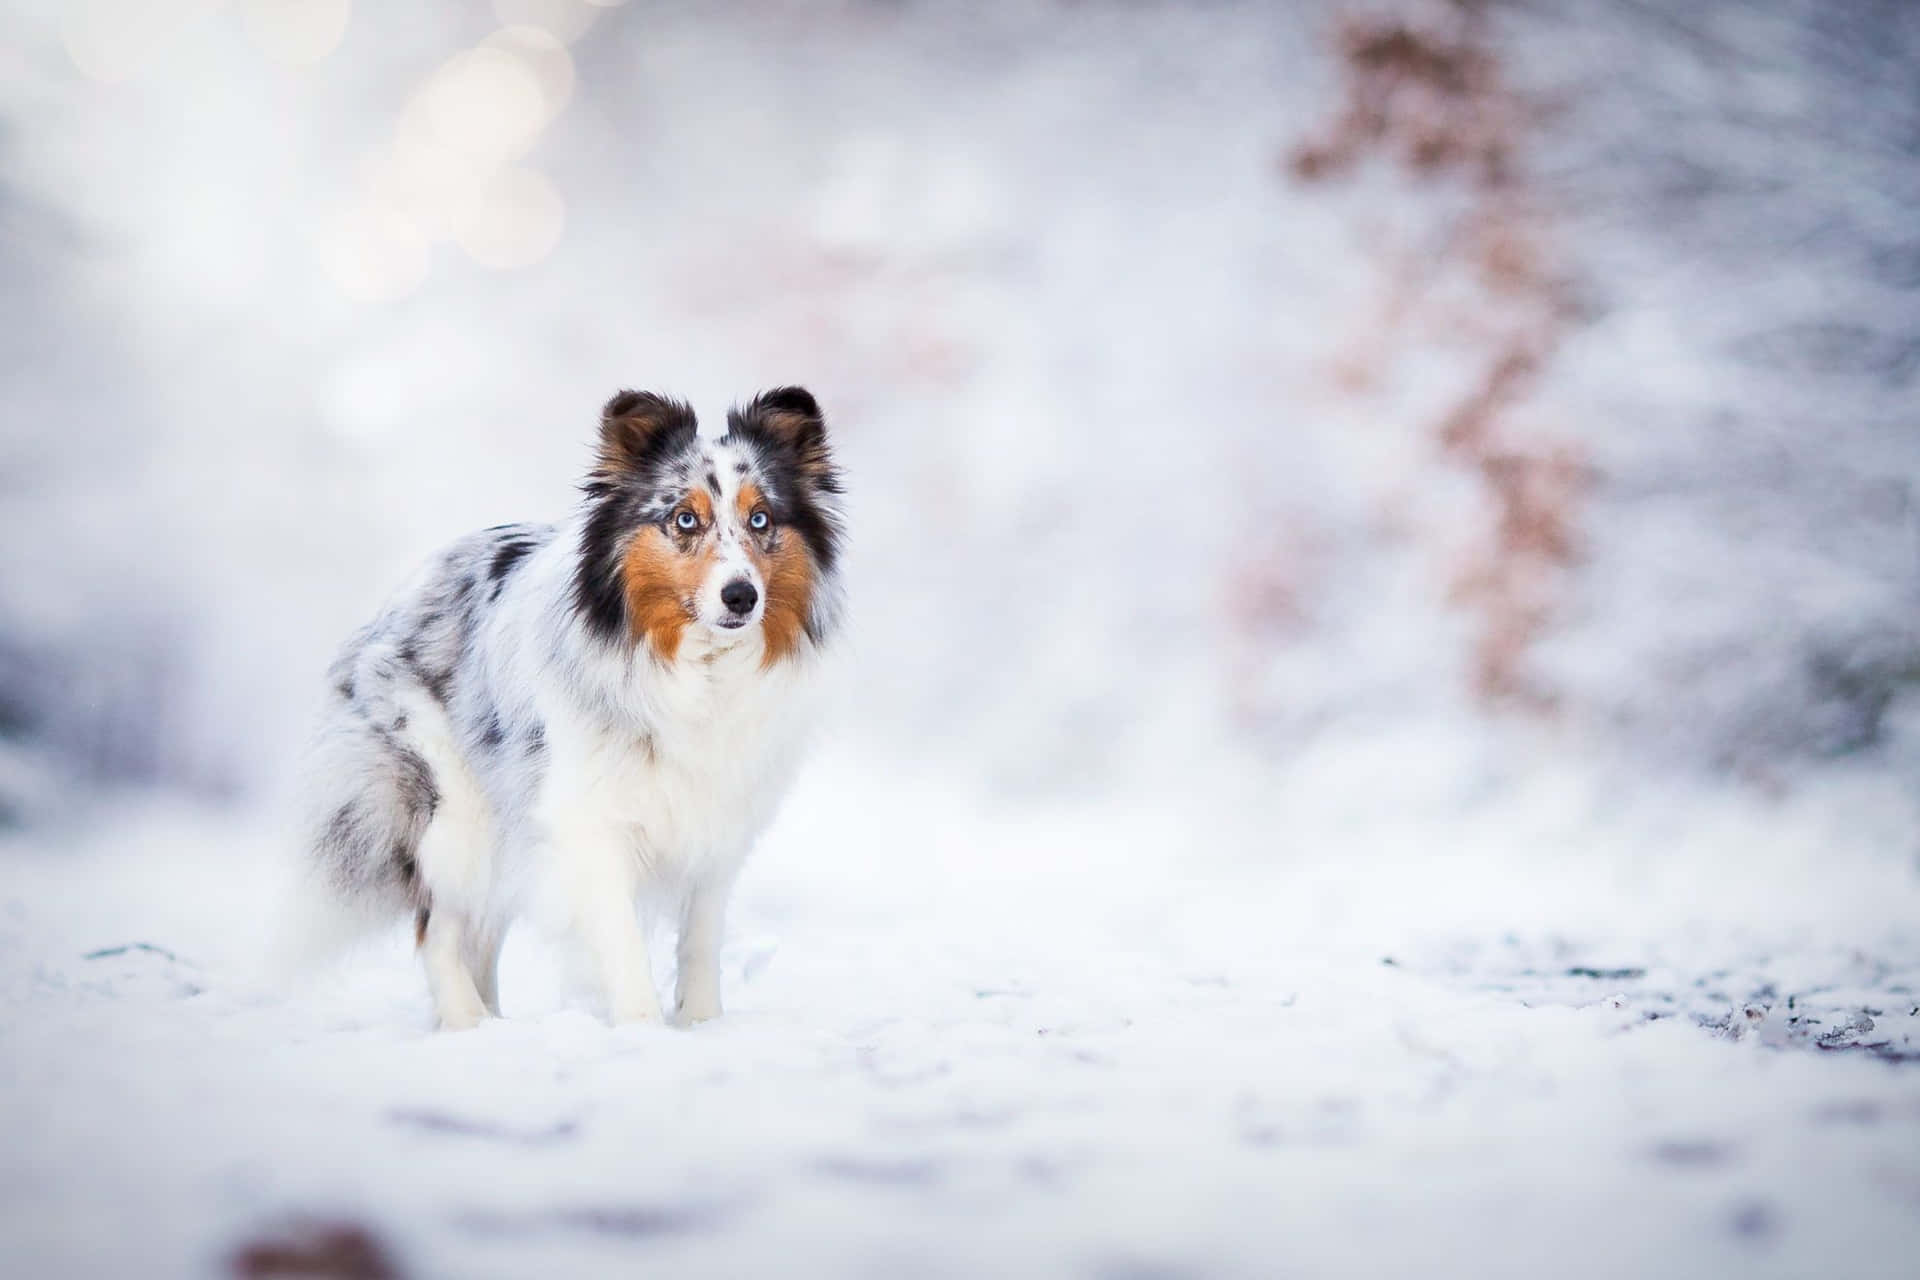 Tag et spadseretur gennem den vinterlige vidunderland med din hund. Wallpaper